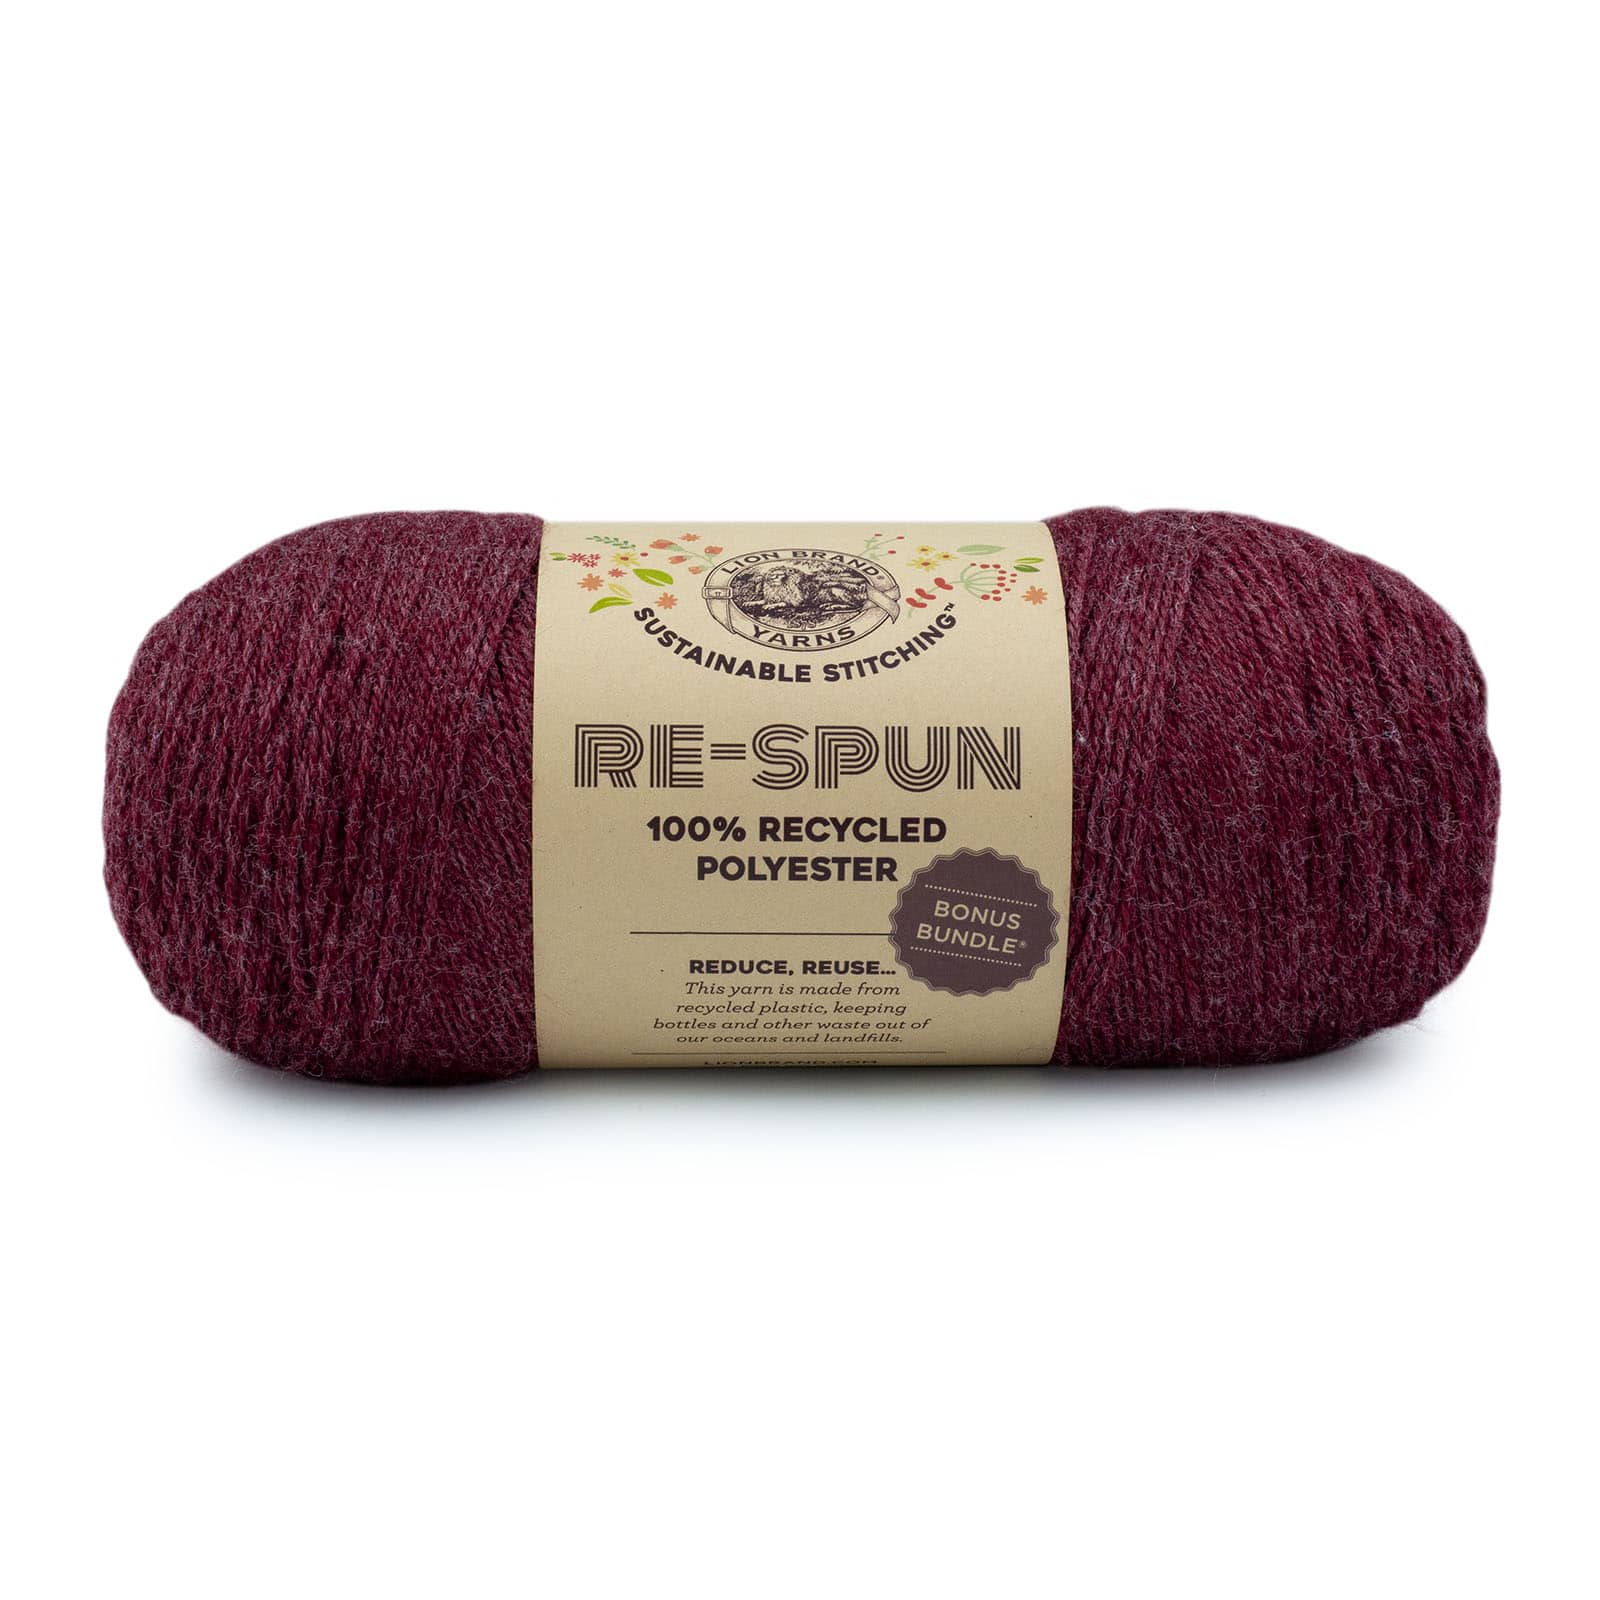 Lion Brand® Sustainable Stitching™ Re-Spun Bonus Bundle® Yarn